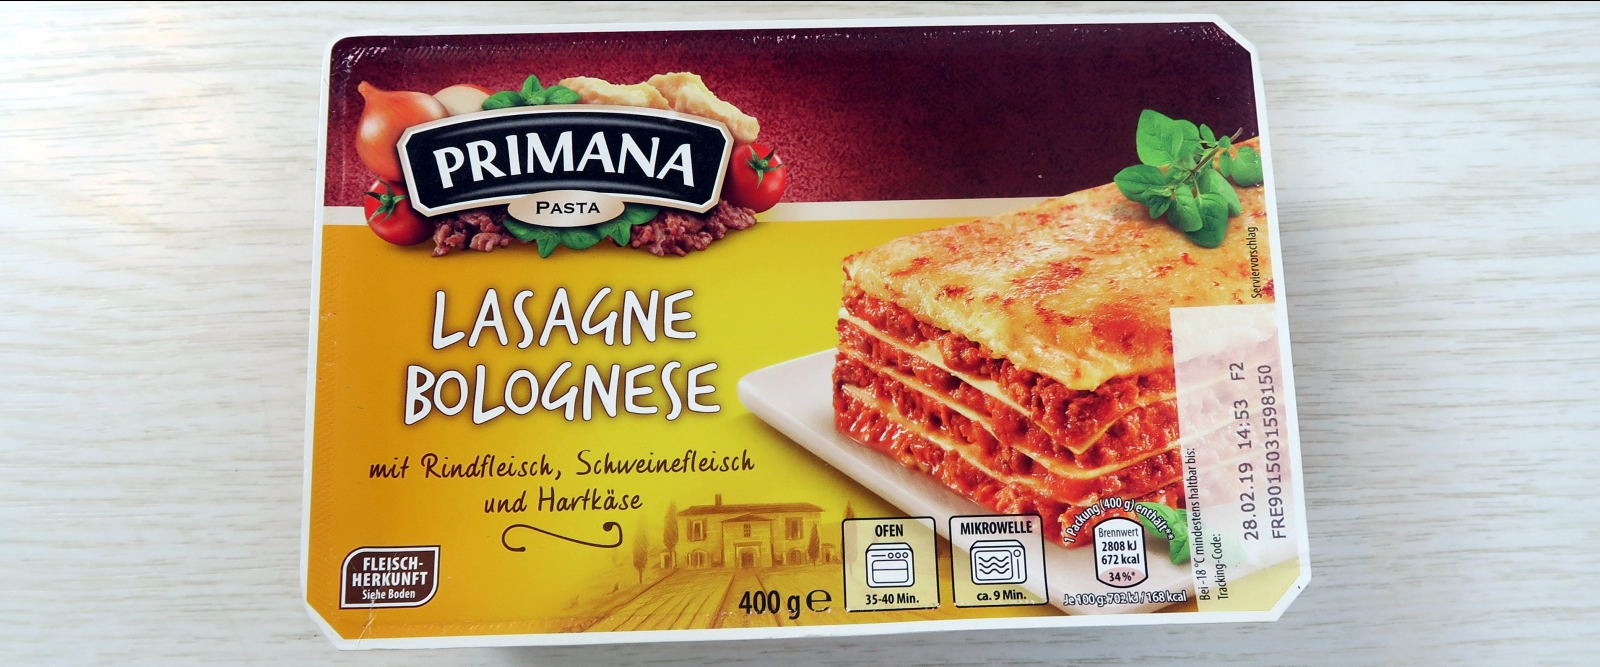 Primana Lasagne Bolognese